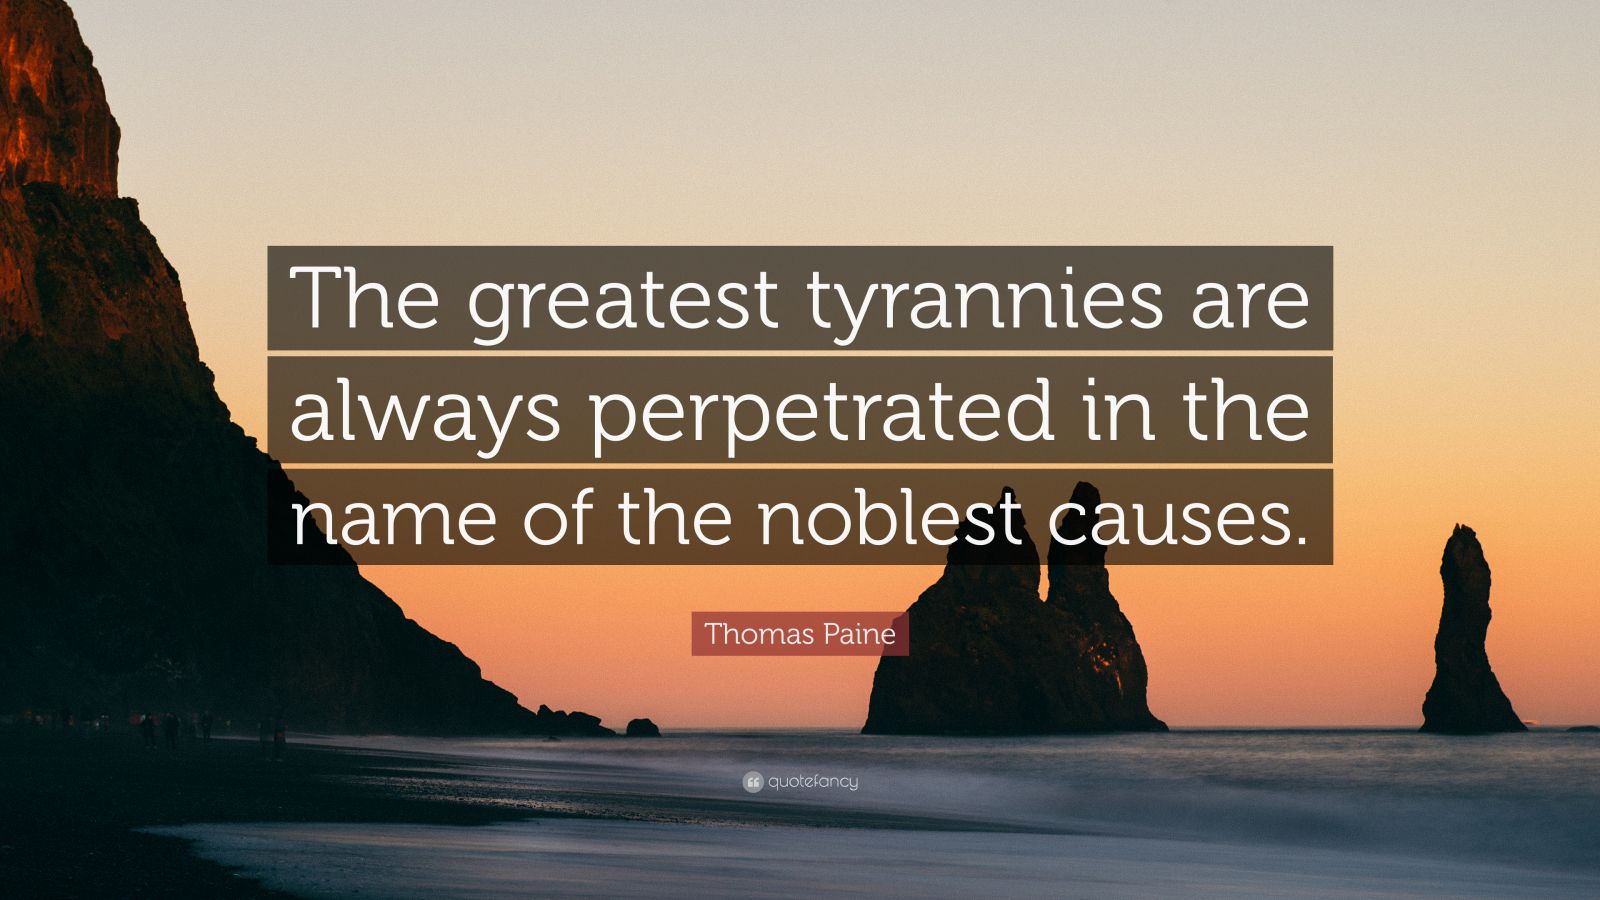 tyranny quotes